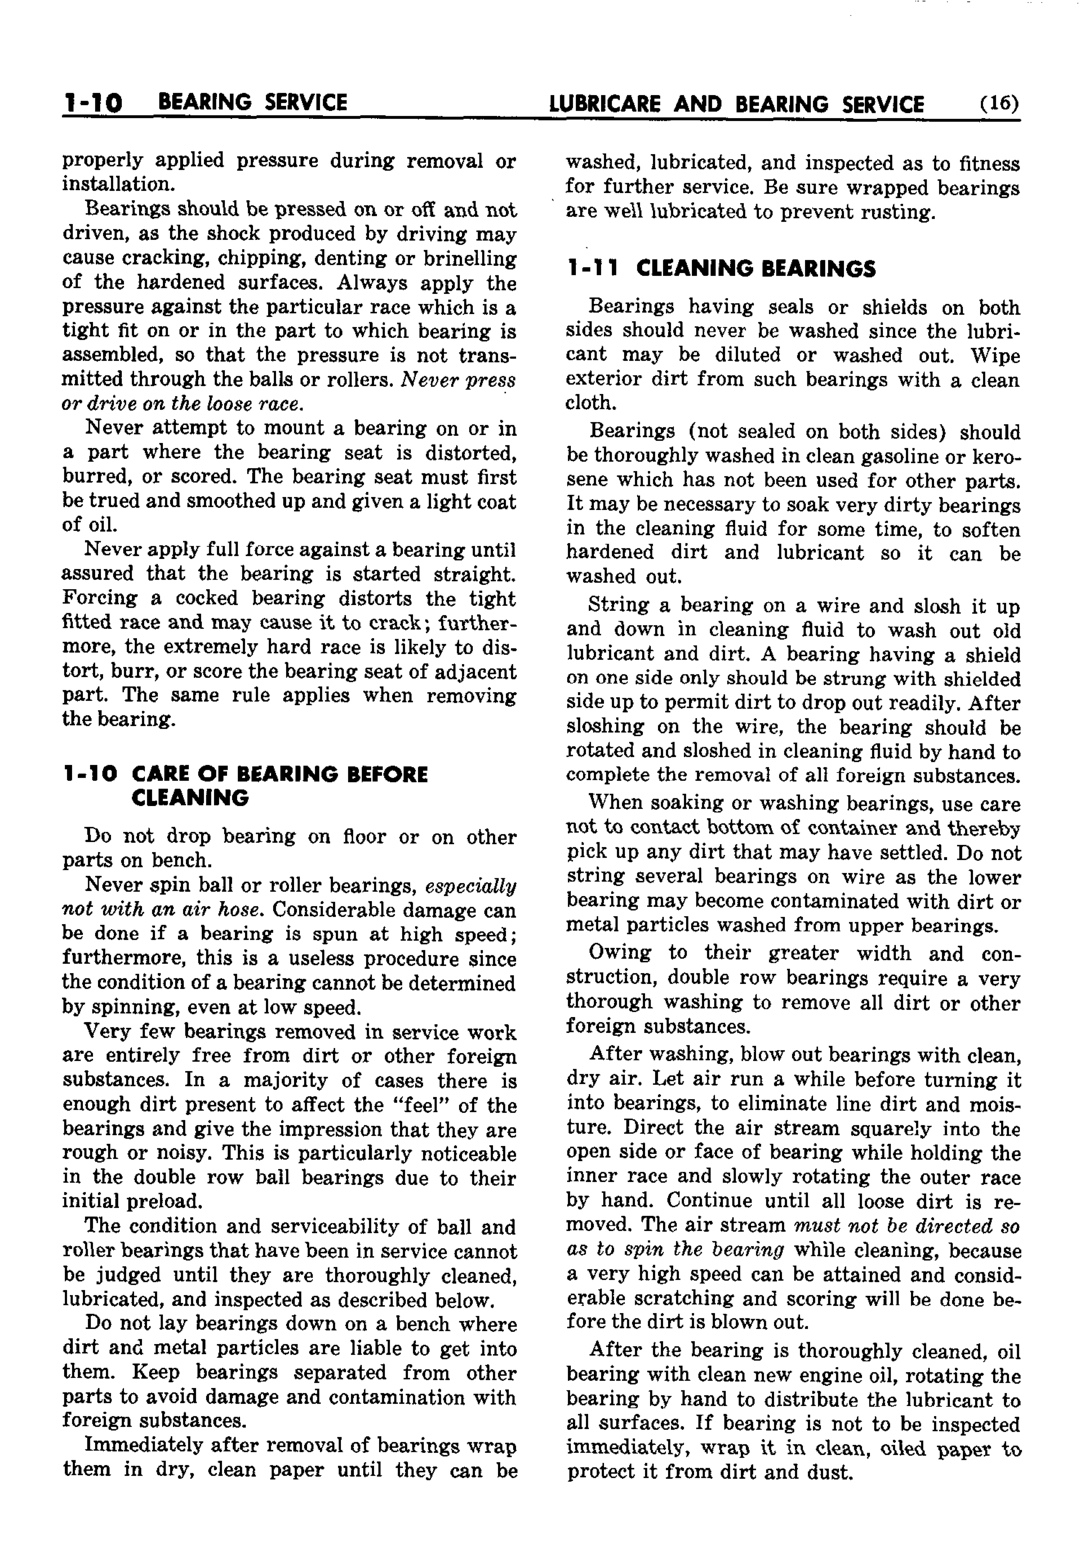 n_02 1952 Buick Shop Manual - Lubricare-010-010.jpg